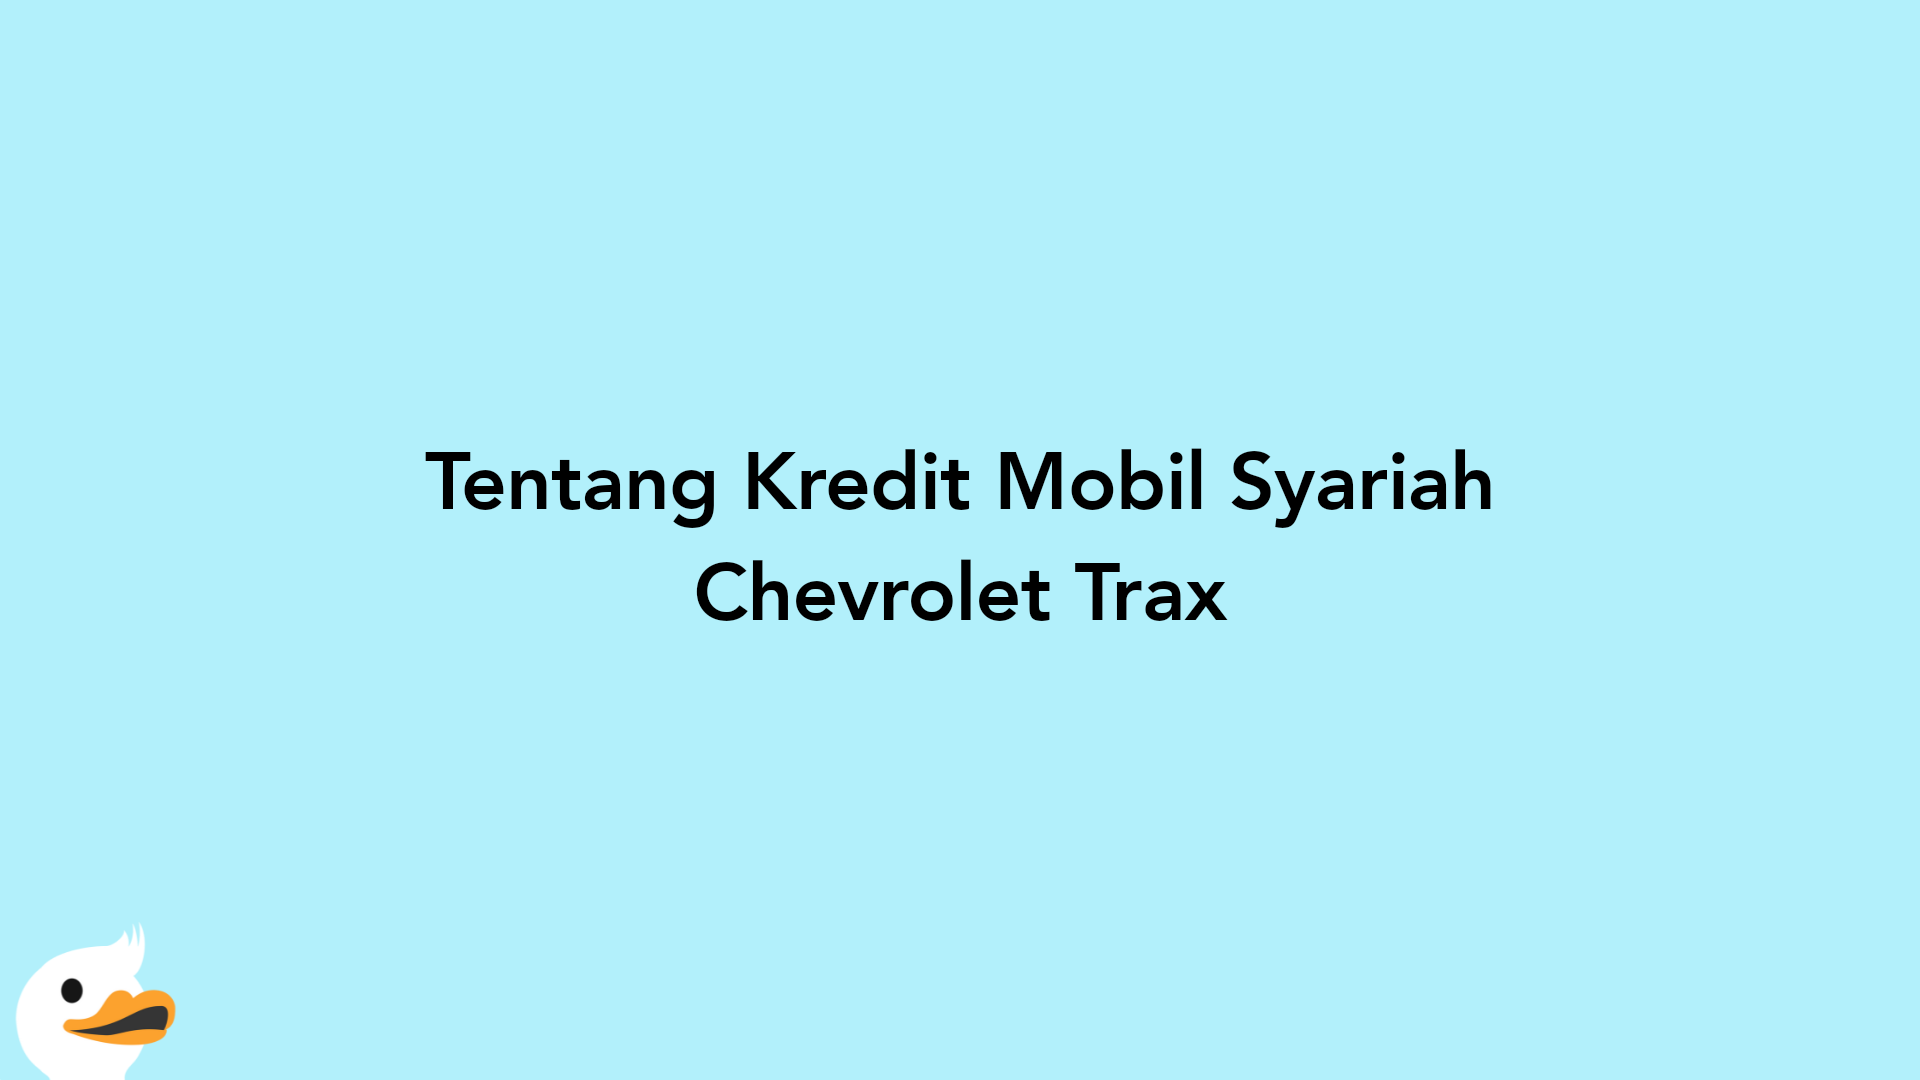 Tentang Kredit Mobil Syariah Chevrolet Trax